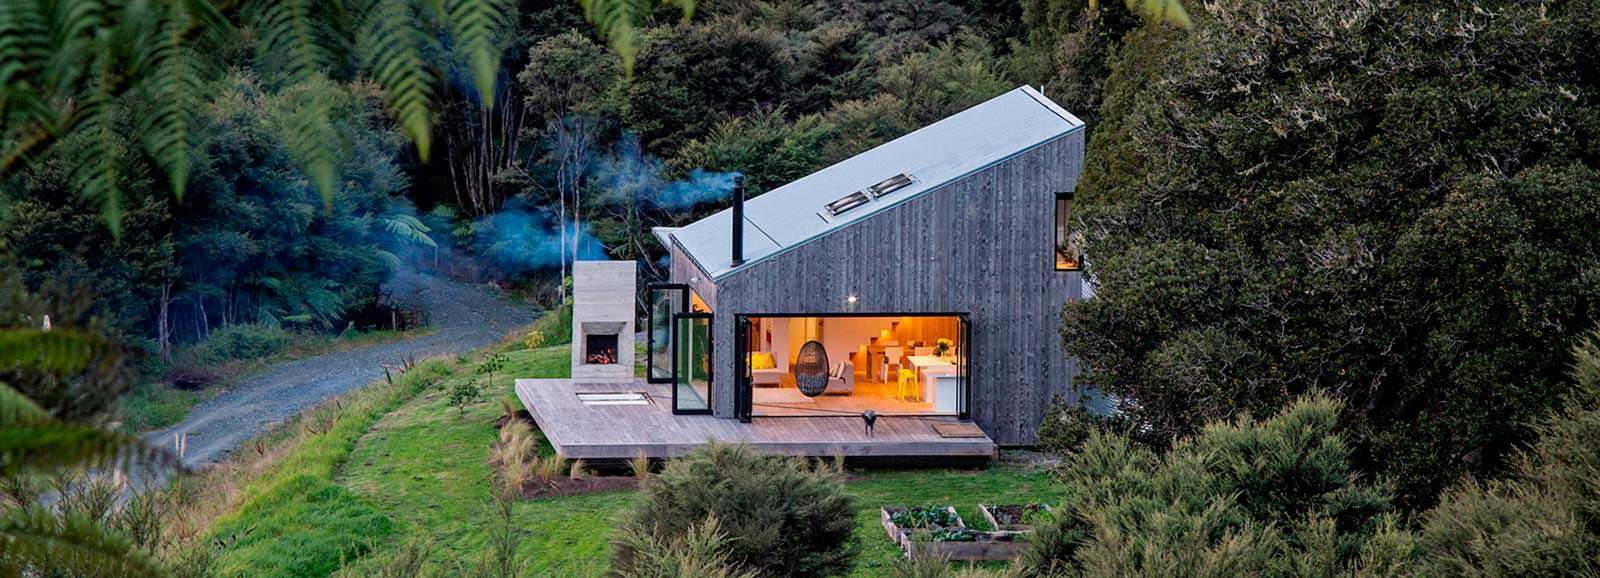 Домик в джунглях Новой Зеландии от LTD Architectural